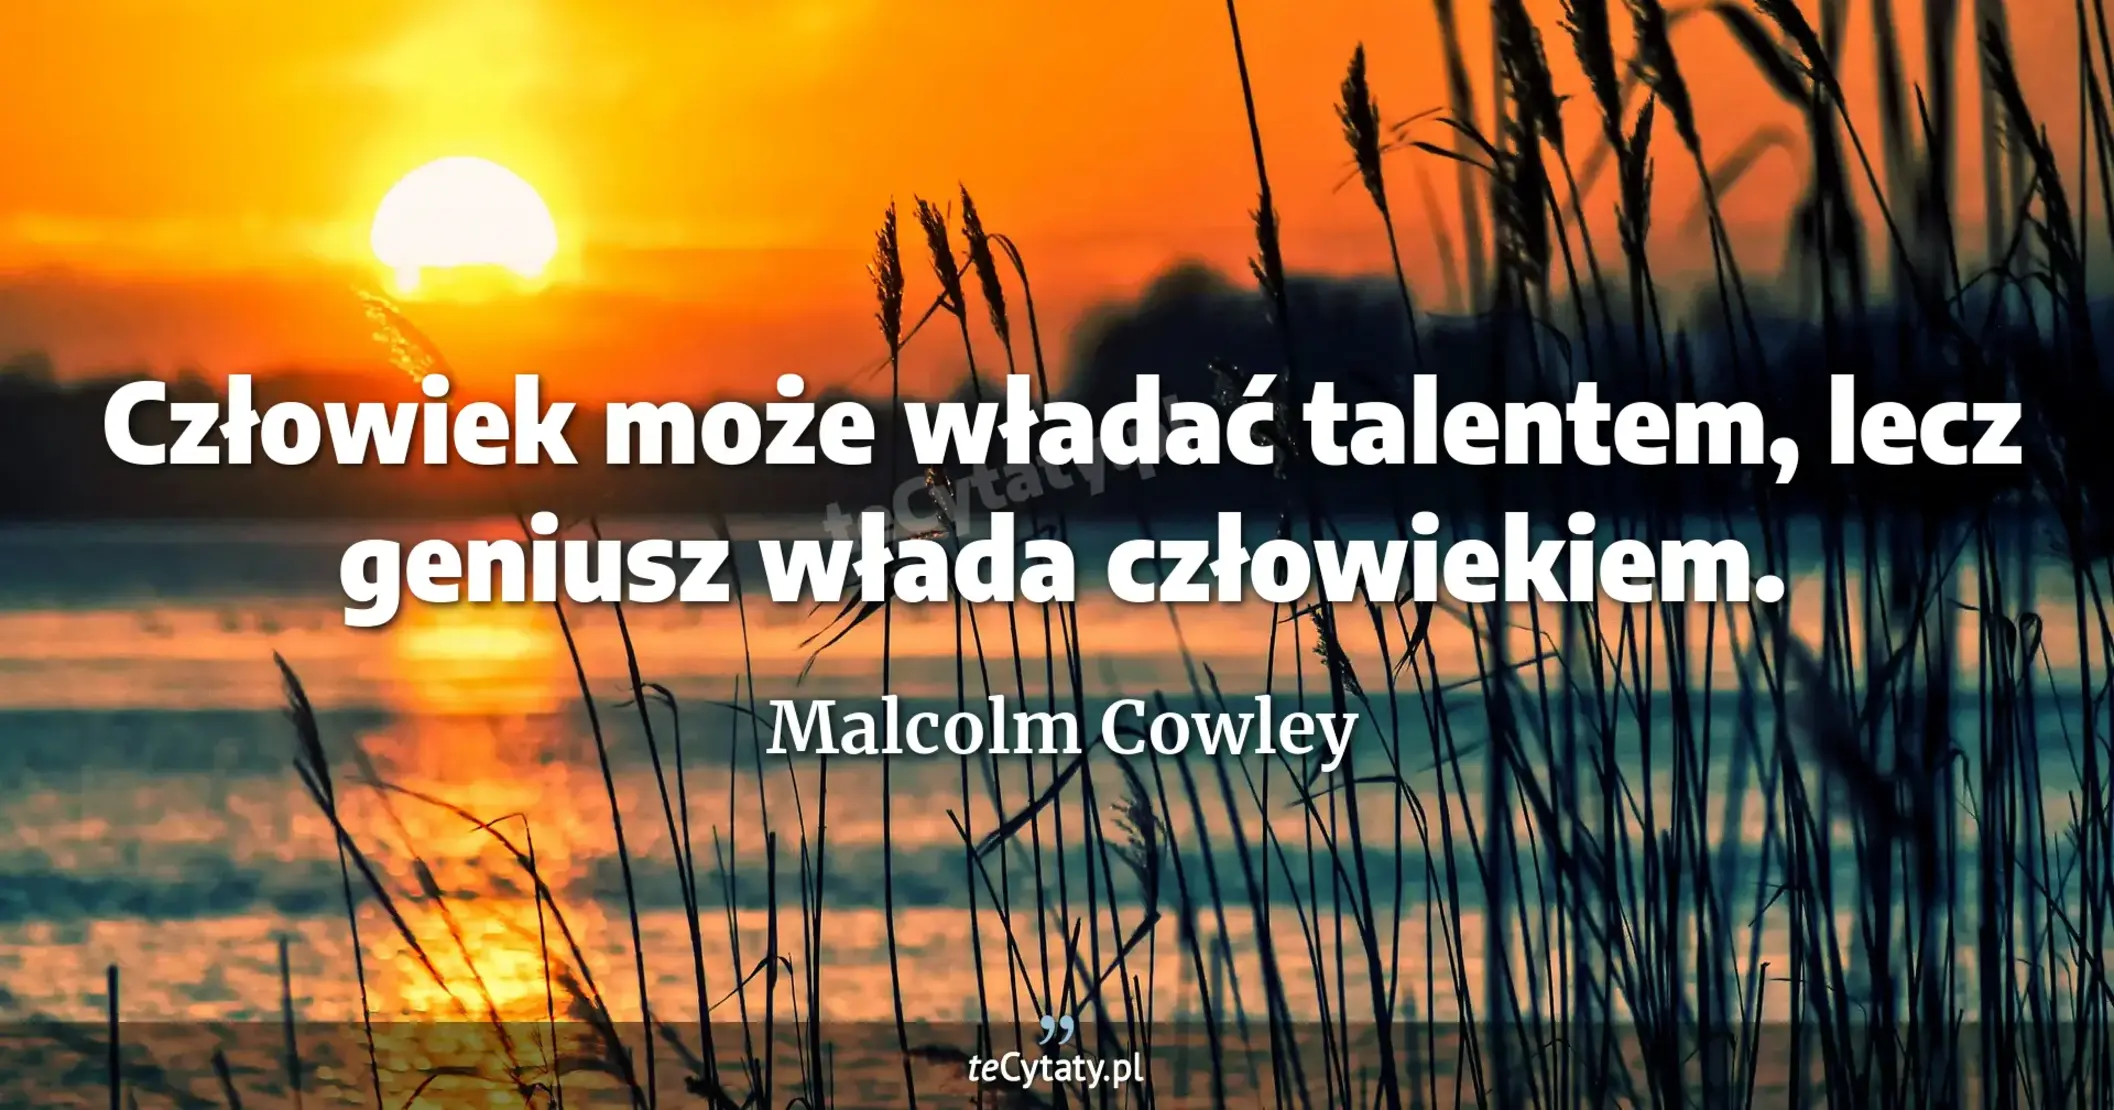 Człowiek może władać talentem, lecz geniusz włada człowiekiem. - Malcolm Cowley